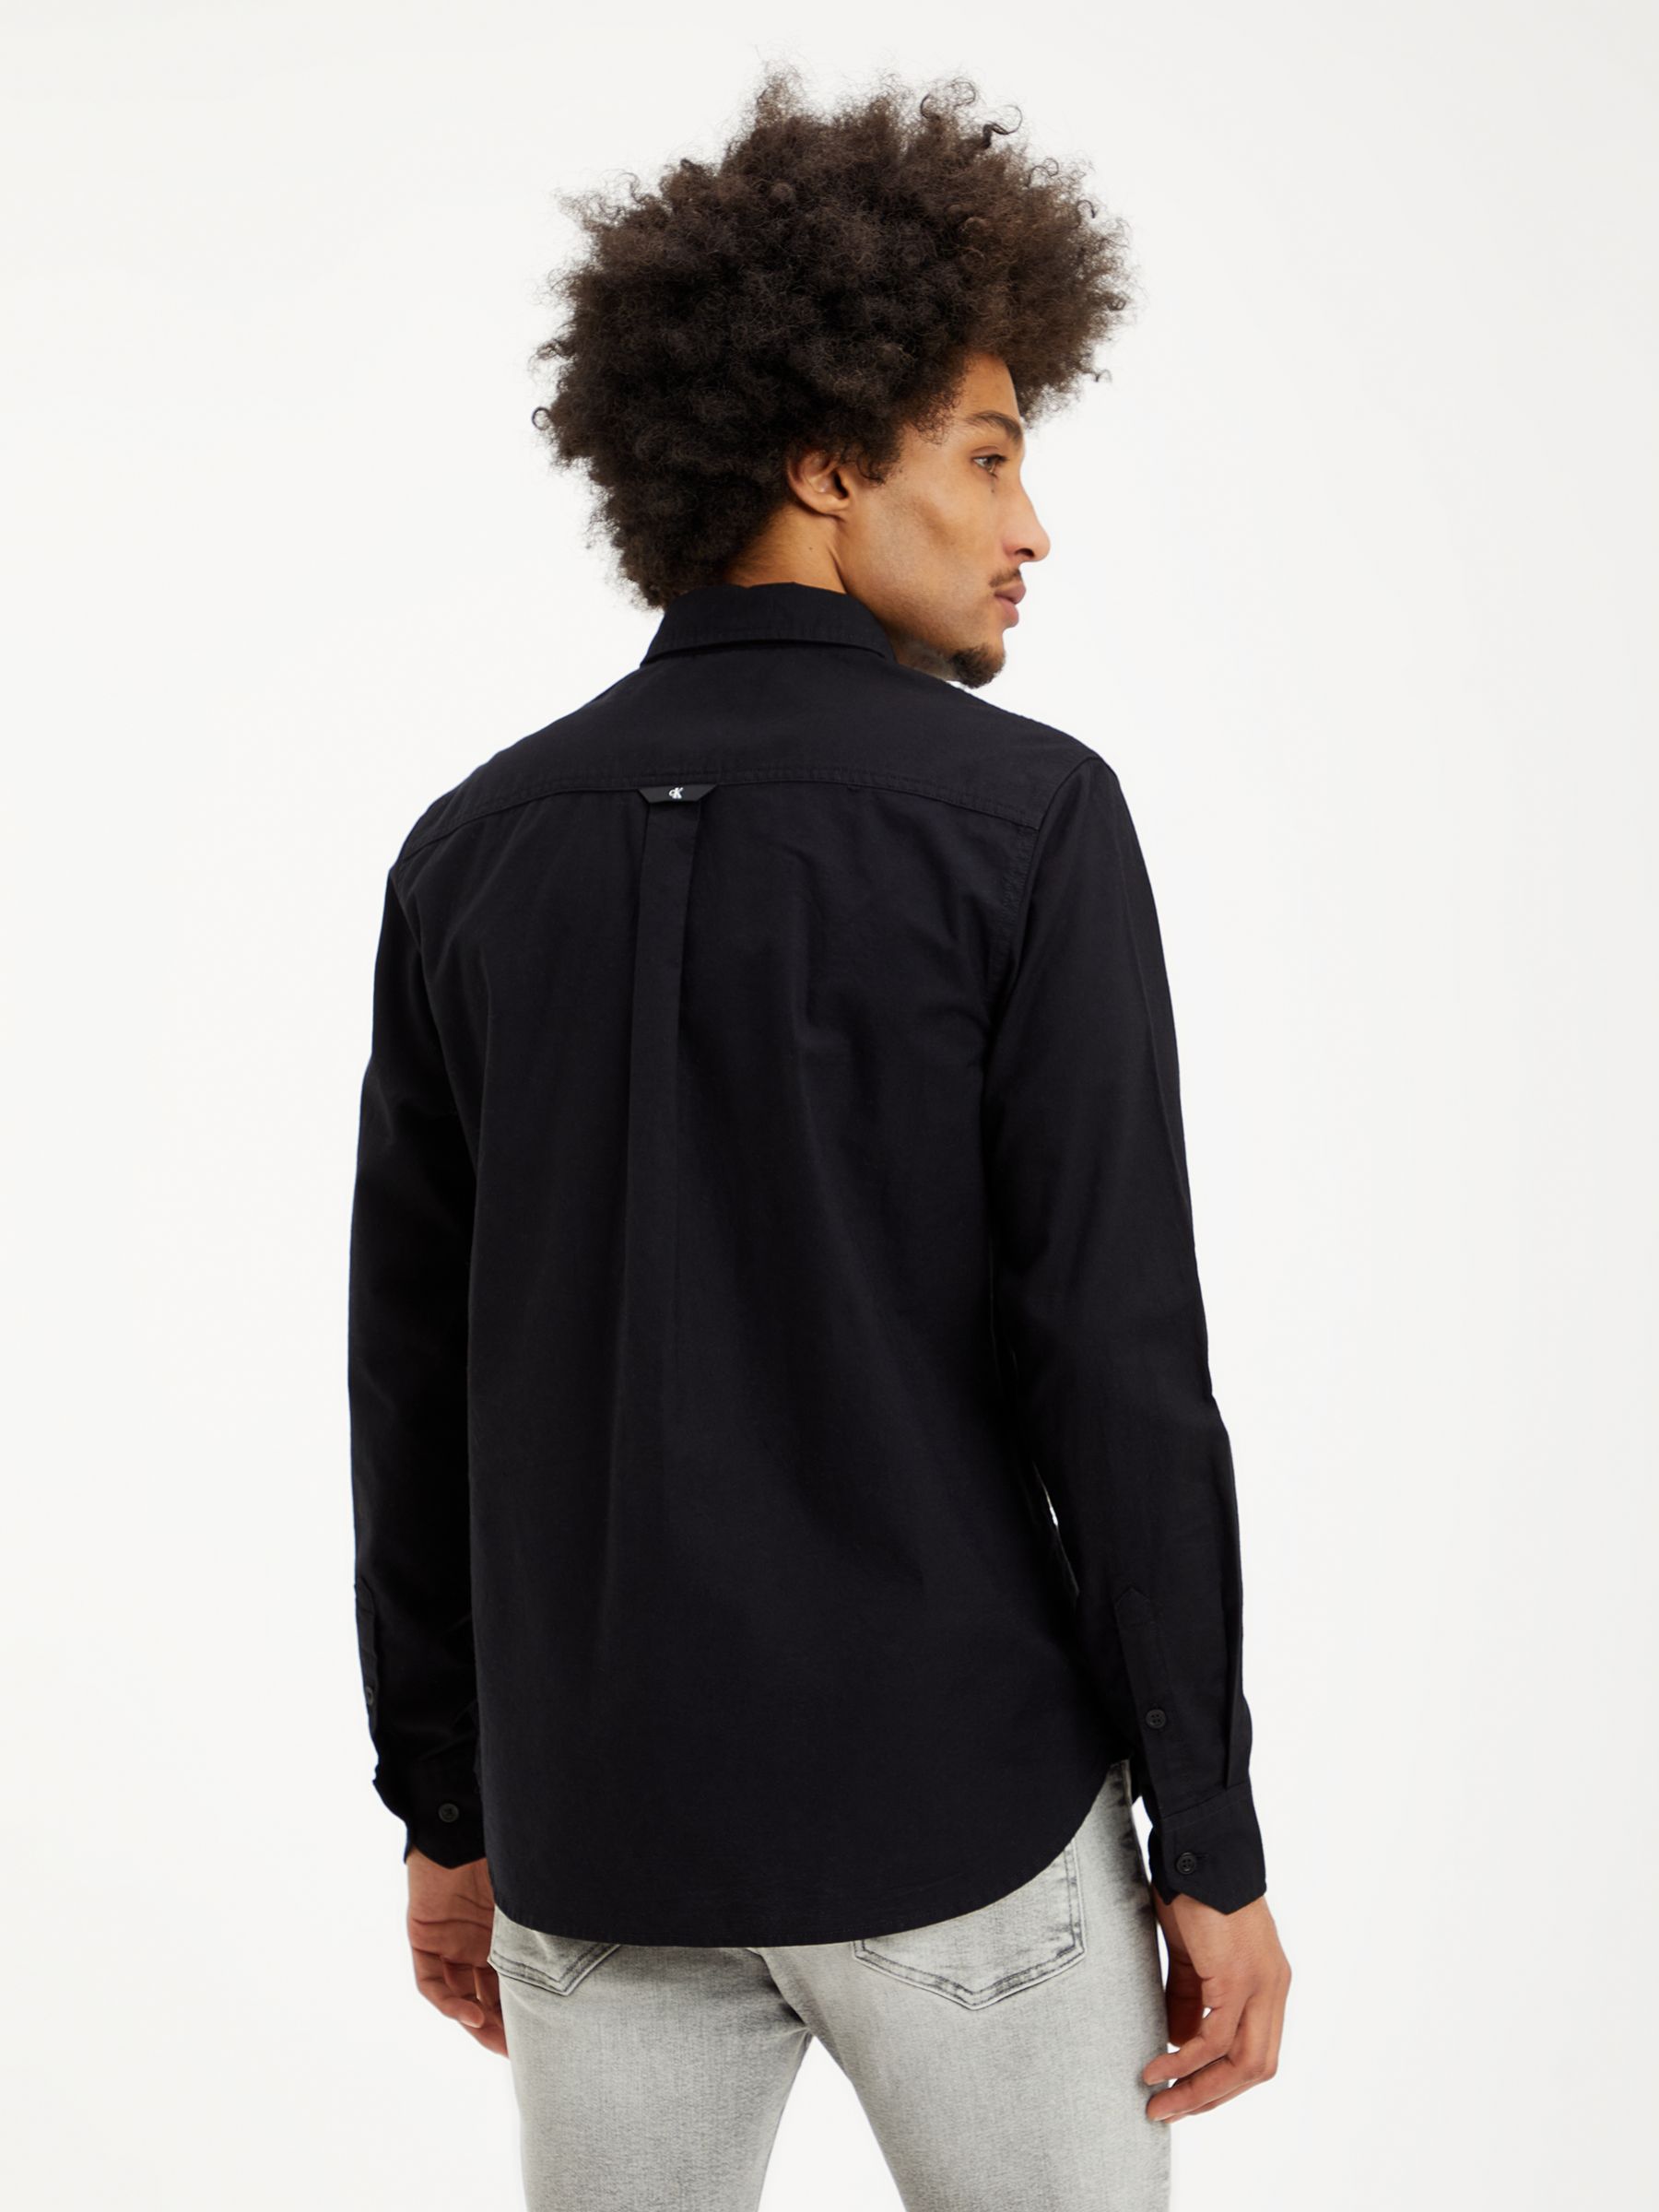 Calvin Klein Jeans Shrunken Badge Shirt, Black, S